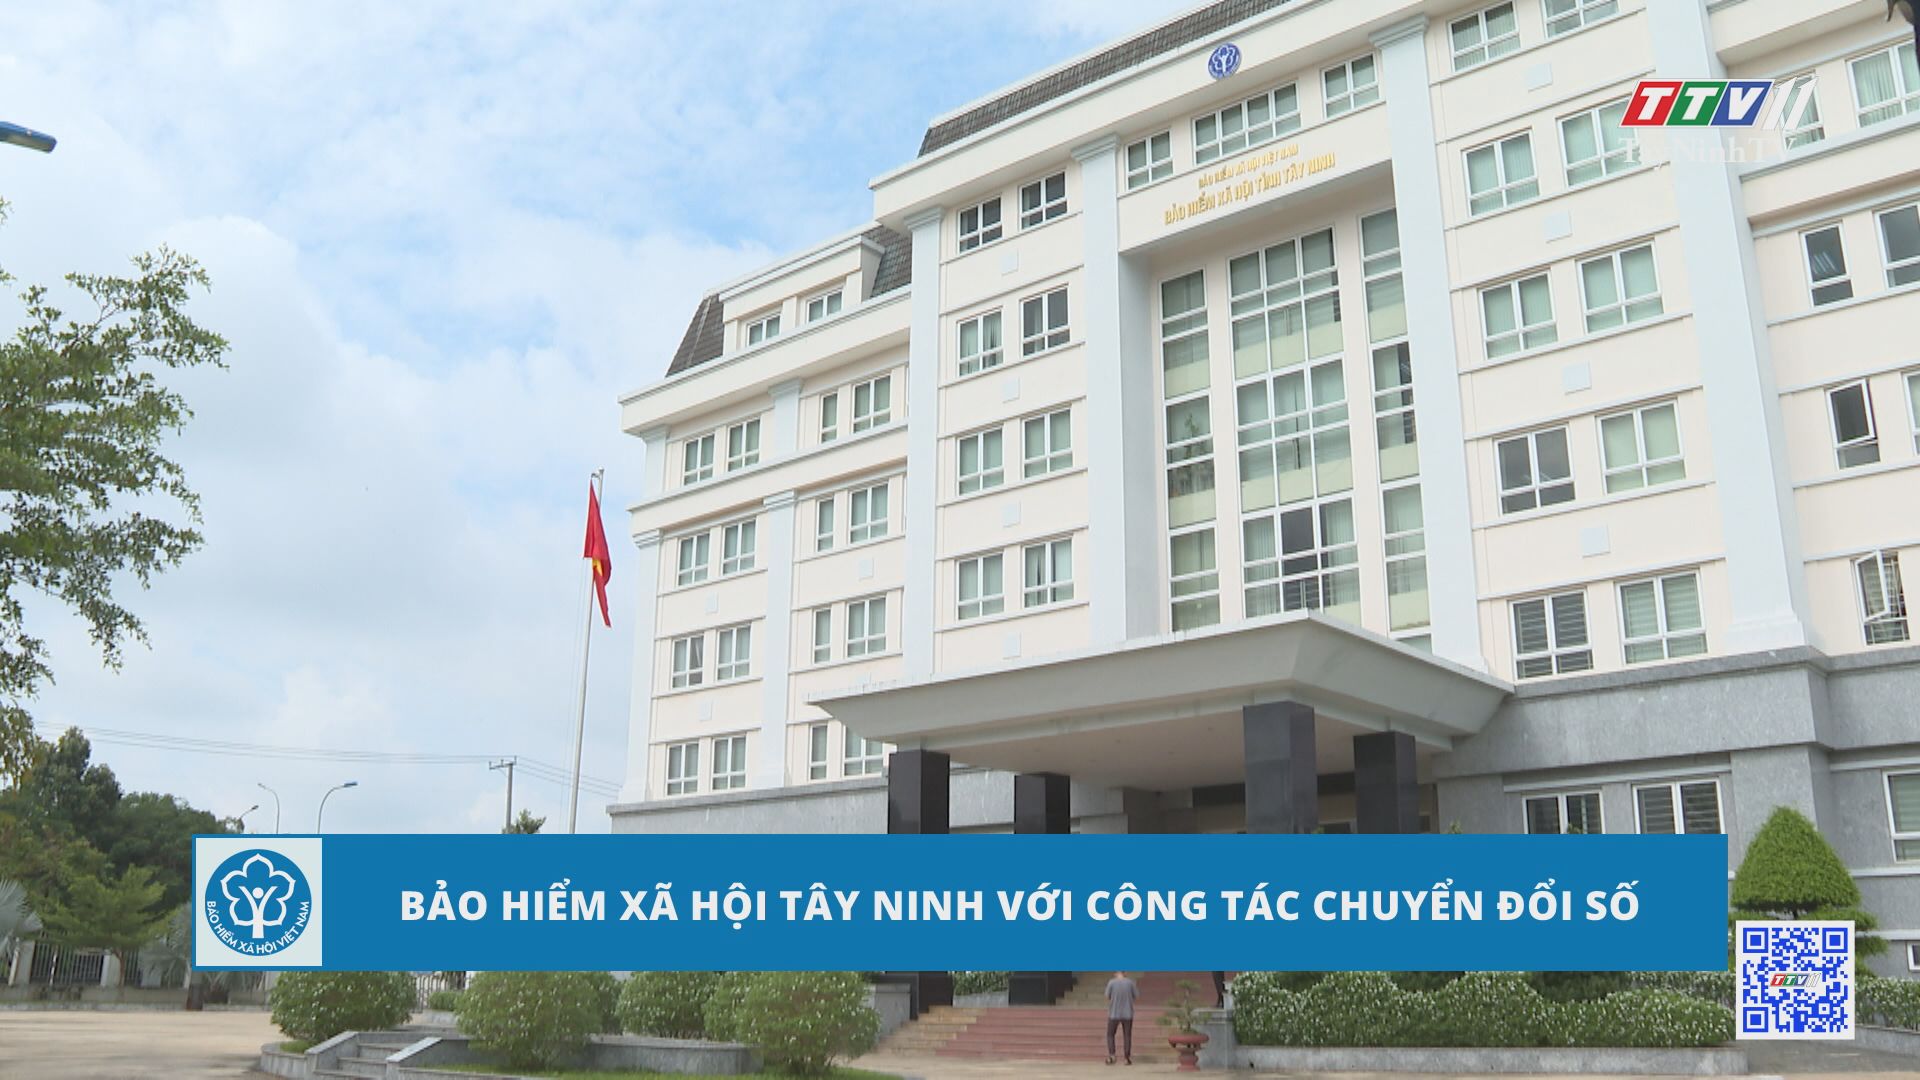 Bảo hiểm xã hội Tây Ninh với công tác chuyển đổi số | Bảo hiểm xã hội | TayNinhTV